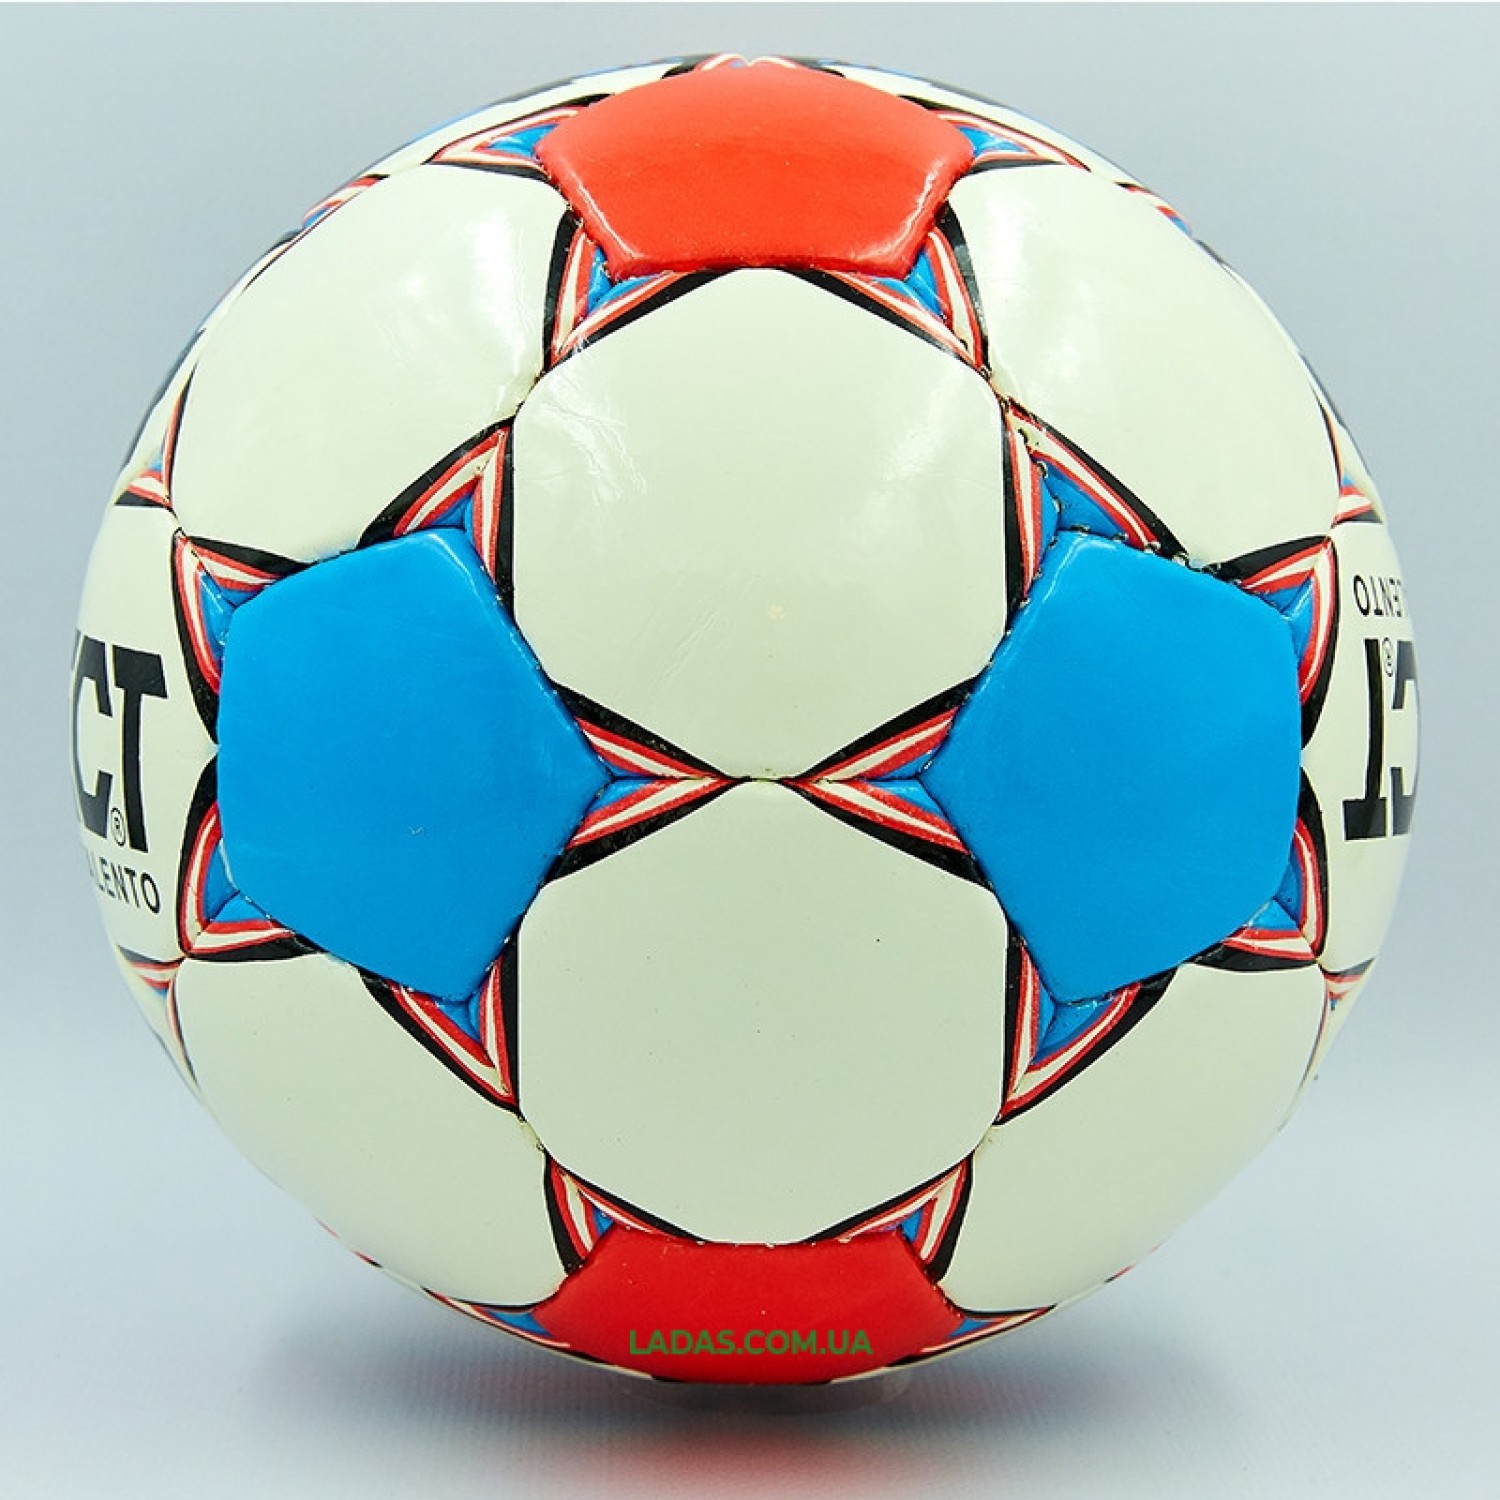 Мяч футбольный №4 PU ламинированный ST TALENTO (бело-синий, сшит вручную)